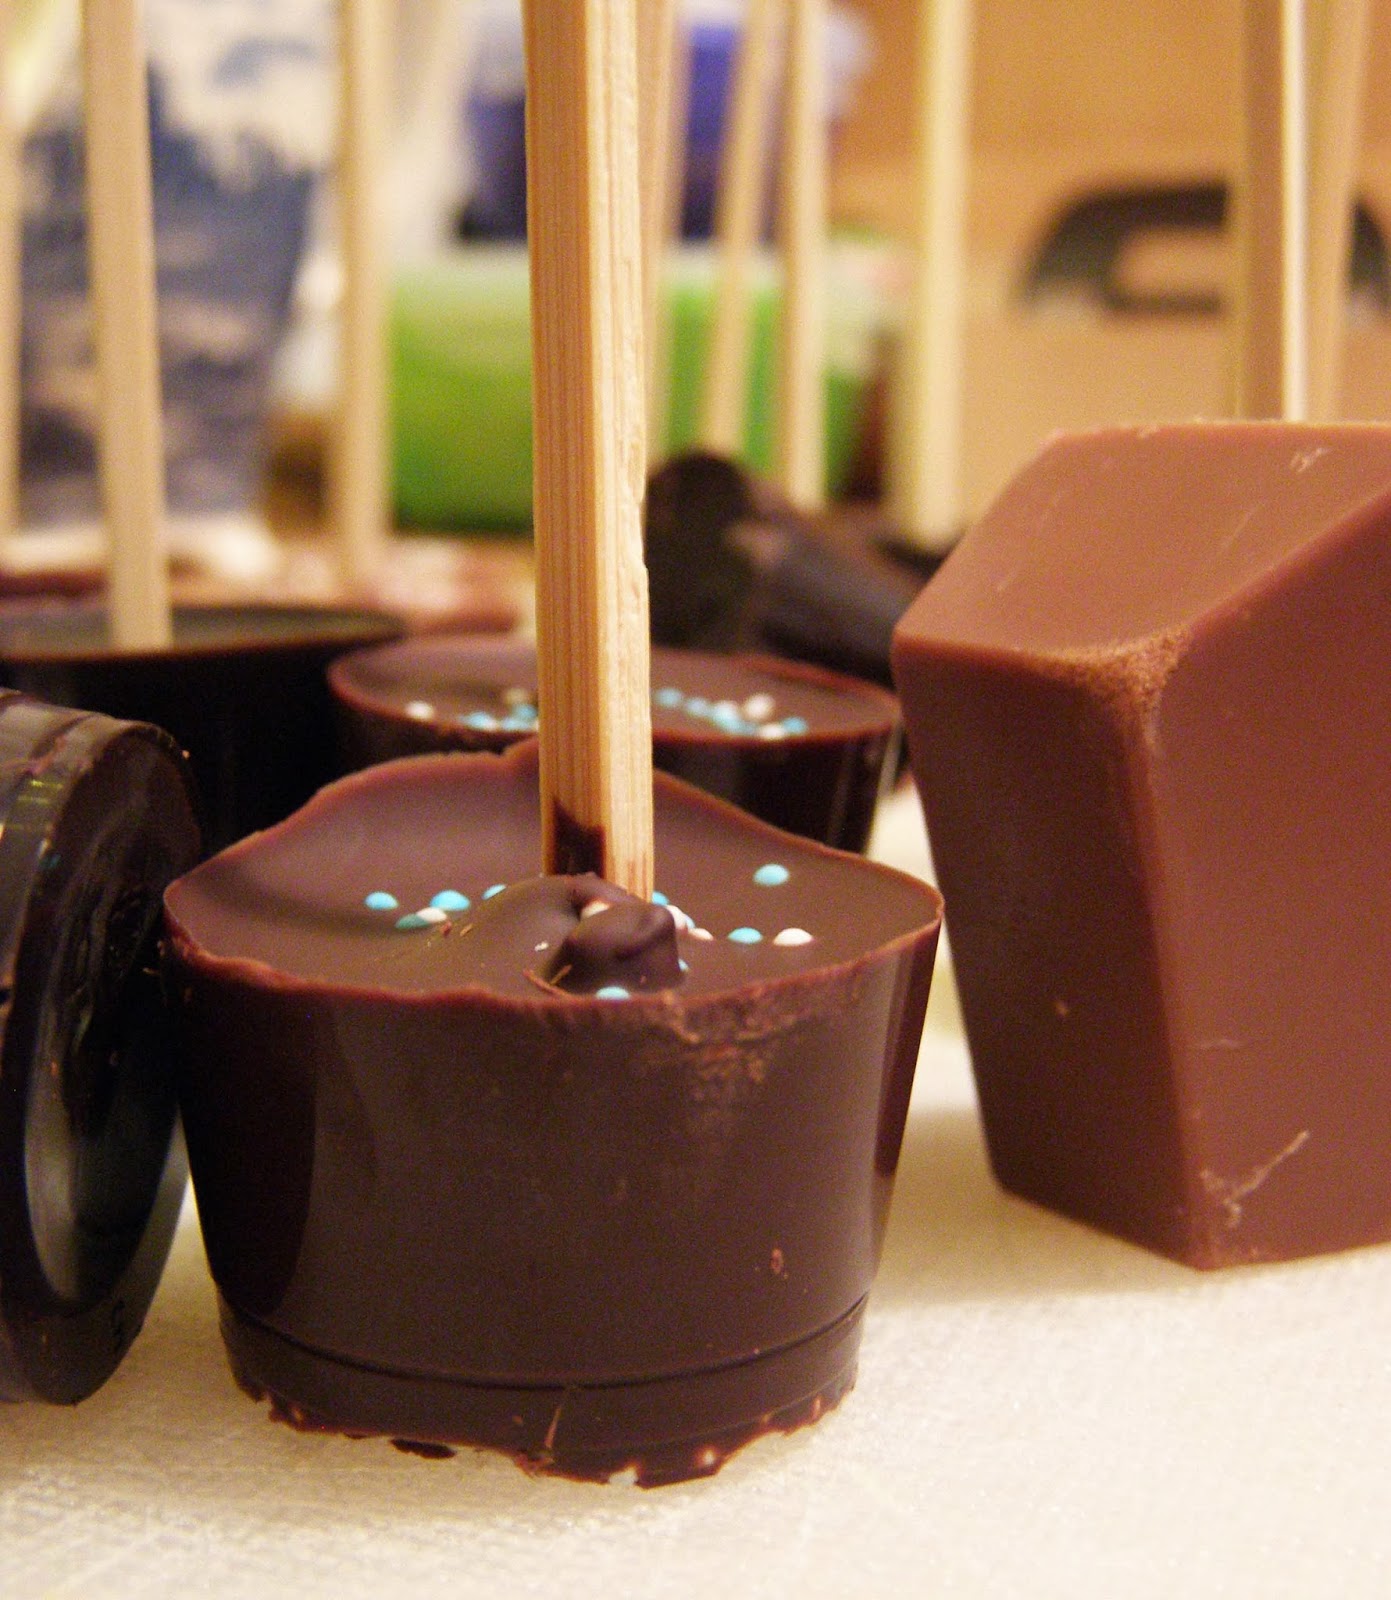 Baiserhäubchen : Heiße Schokolade am Stiel